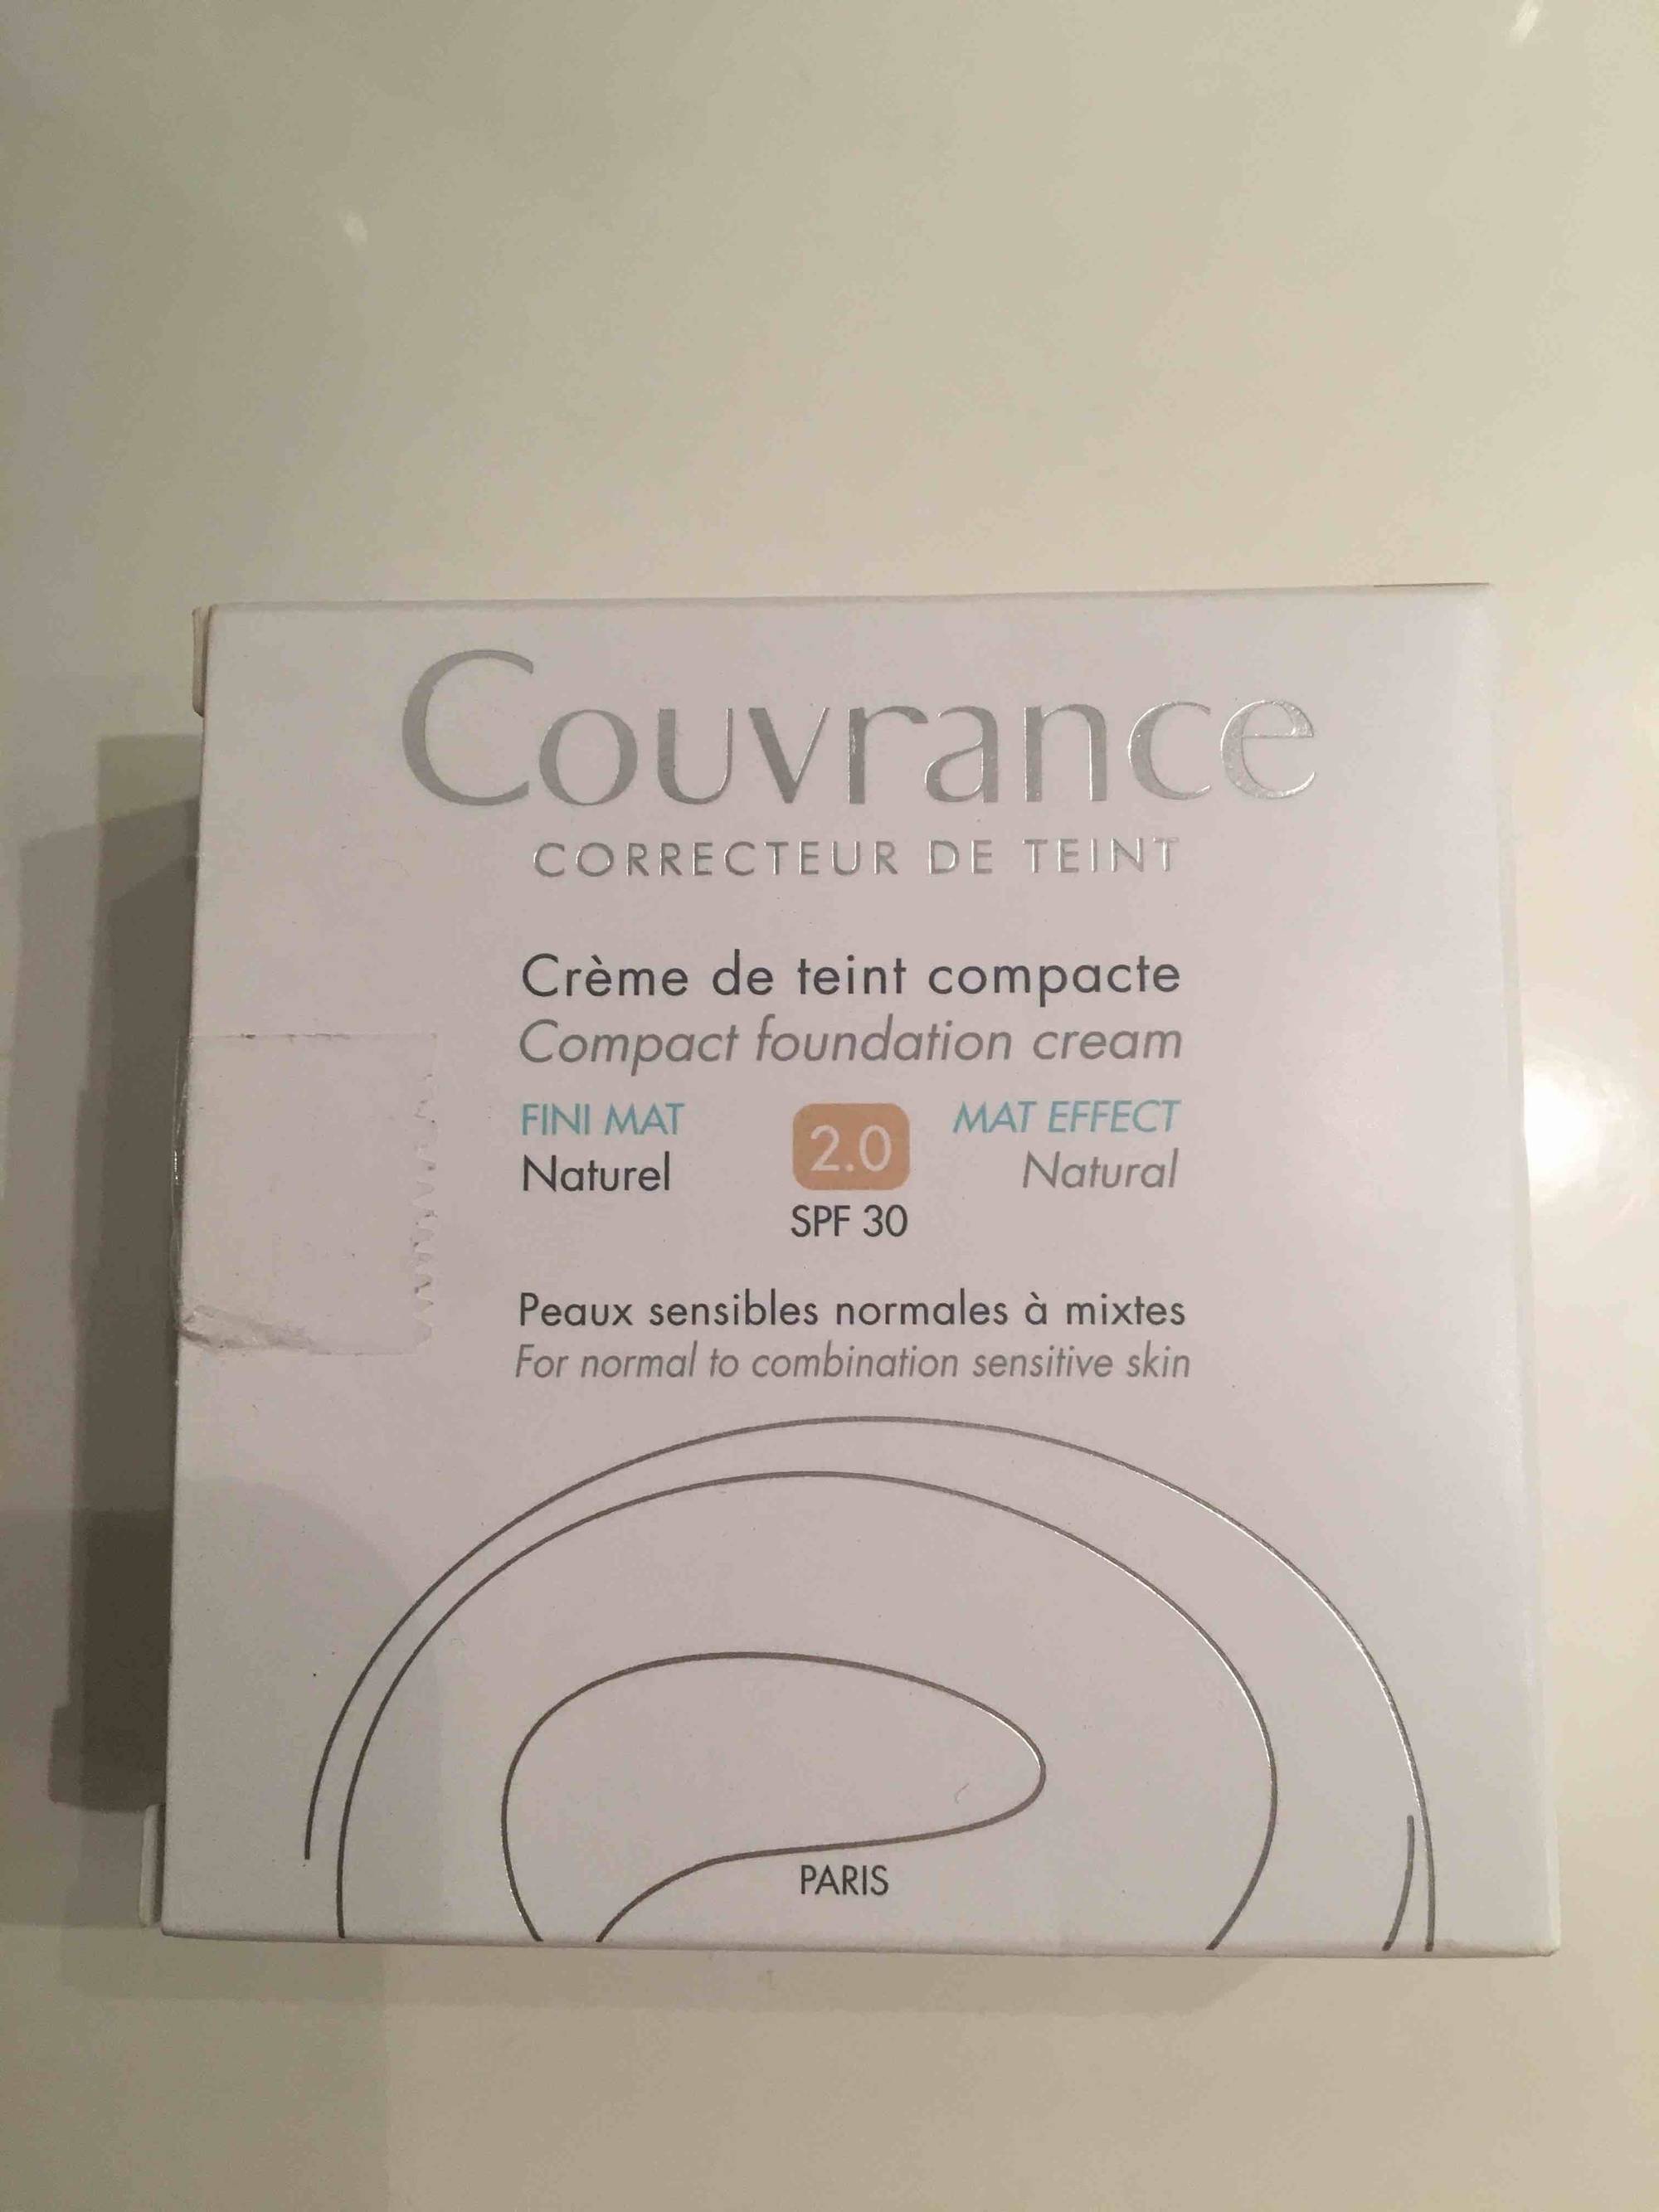 COUVRANCE - Crème de teint compacte - Fini mat 2.0 SPF 30